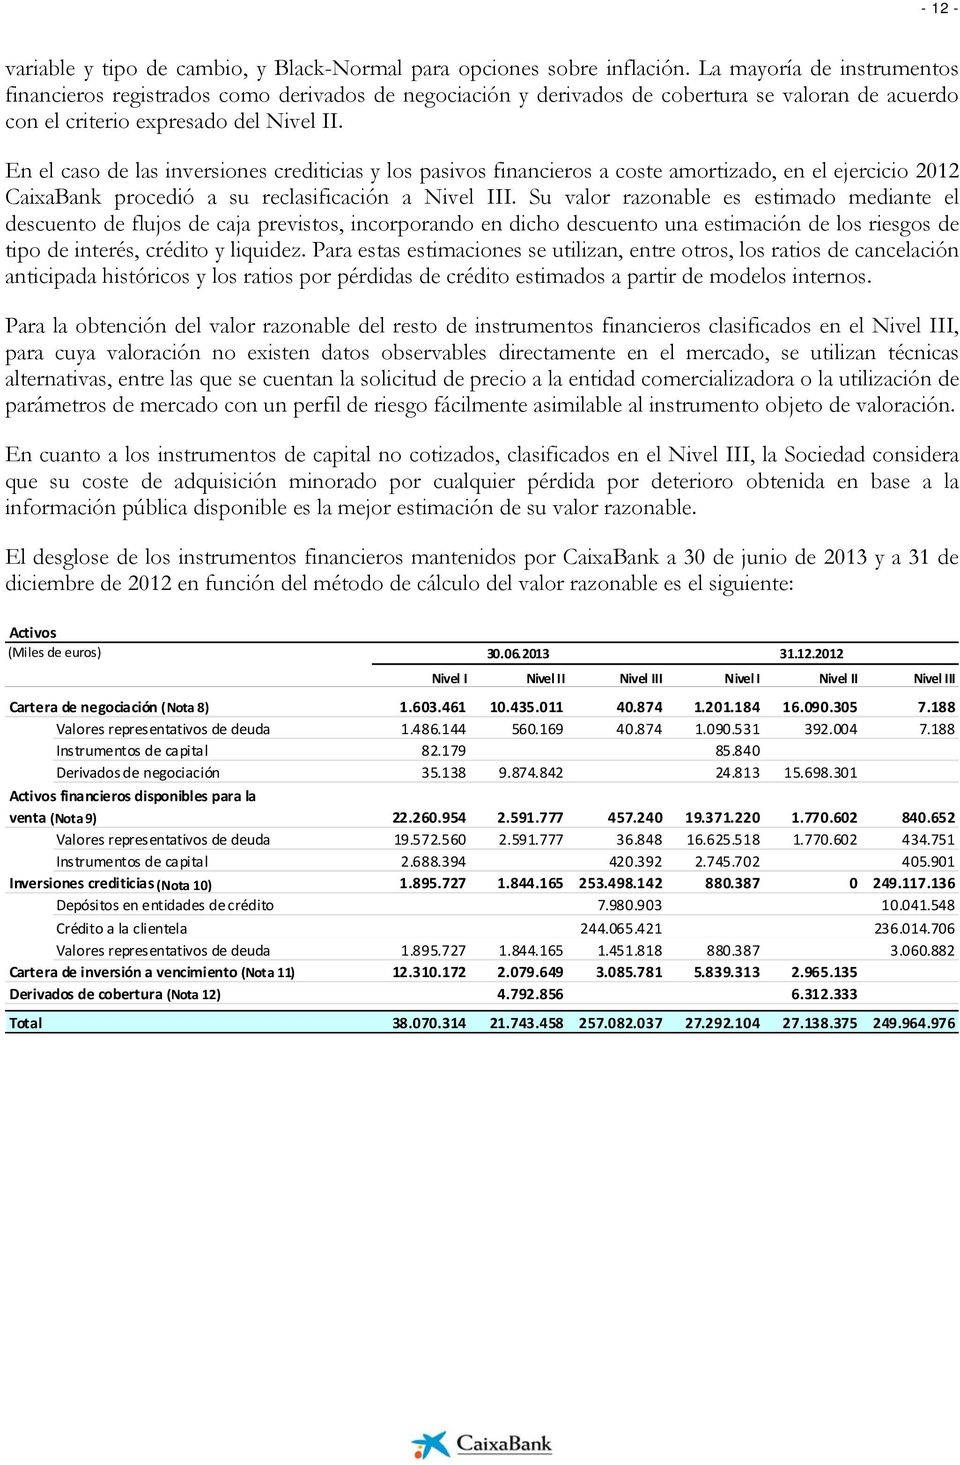 En el caso de las inversiones crediticias y los pasivos financieros a coste amortizado, en el ejercicio 2012 CaixaBank procedió a su reclasificación a Nivel III.